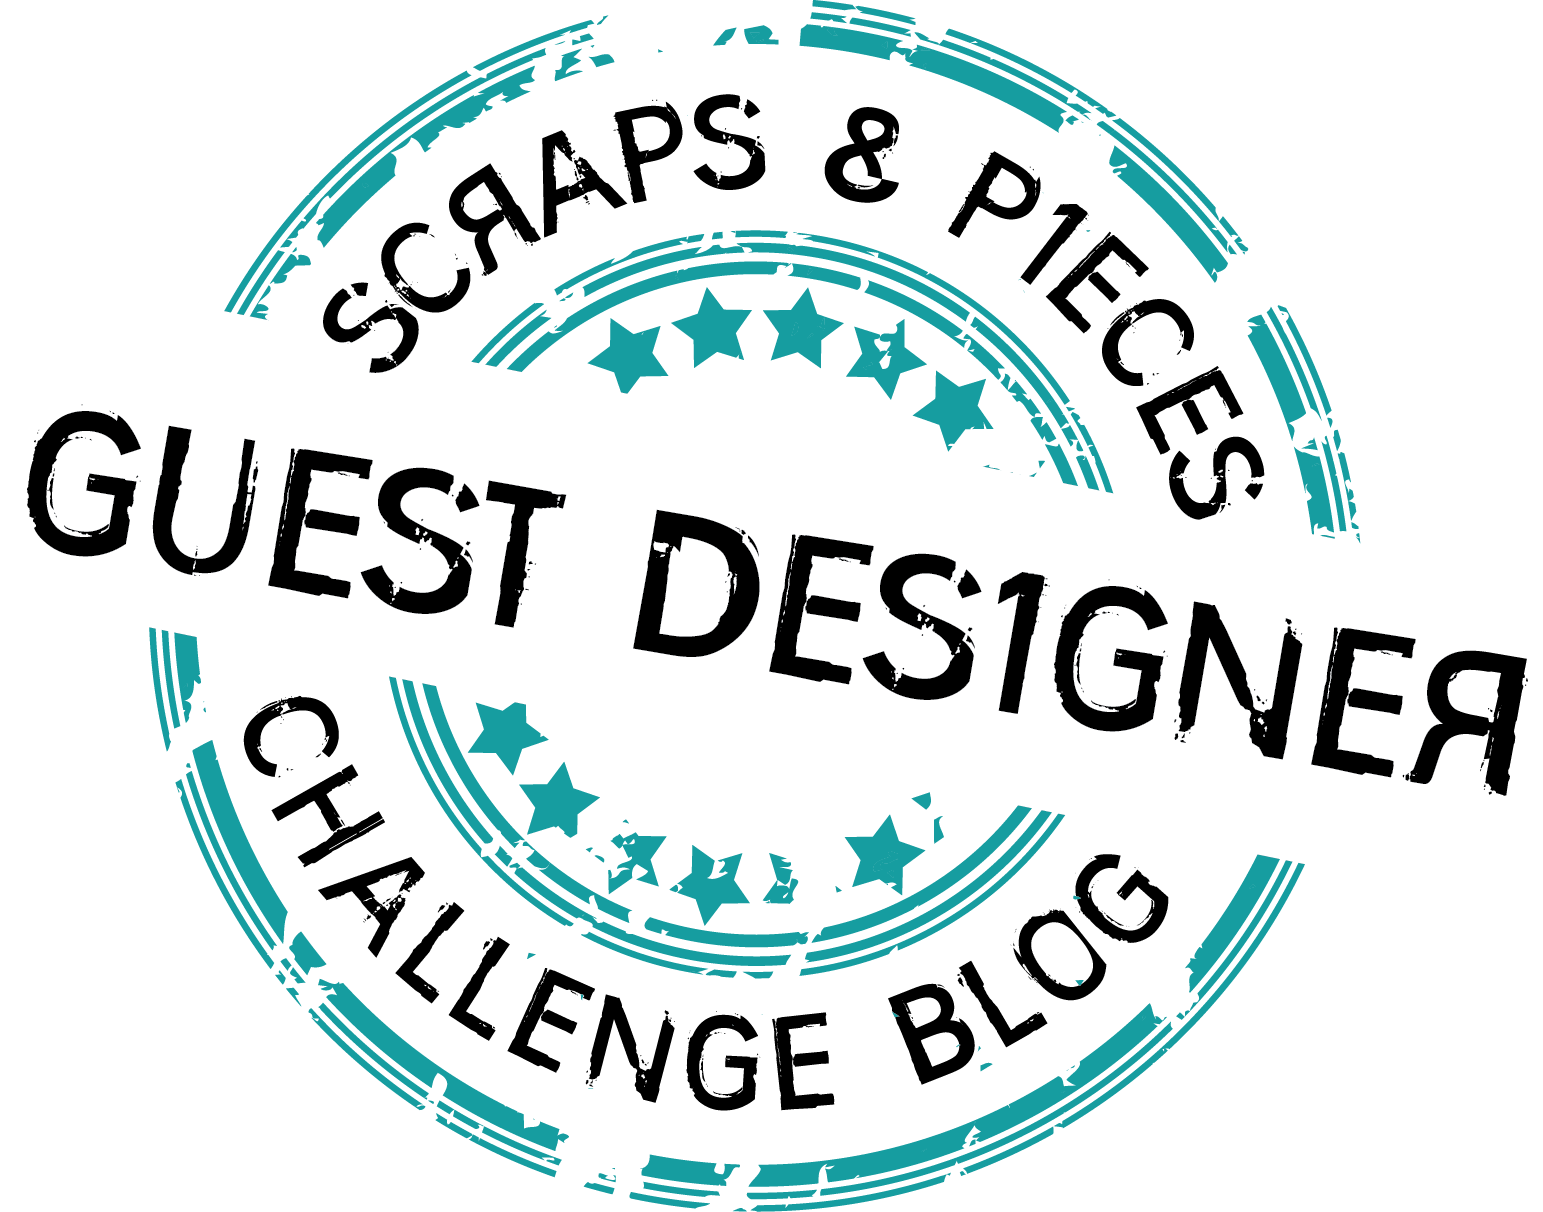 Είσαι Guest Designer? Grab your badge!